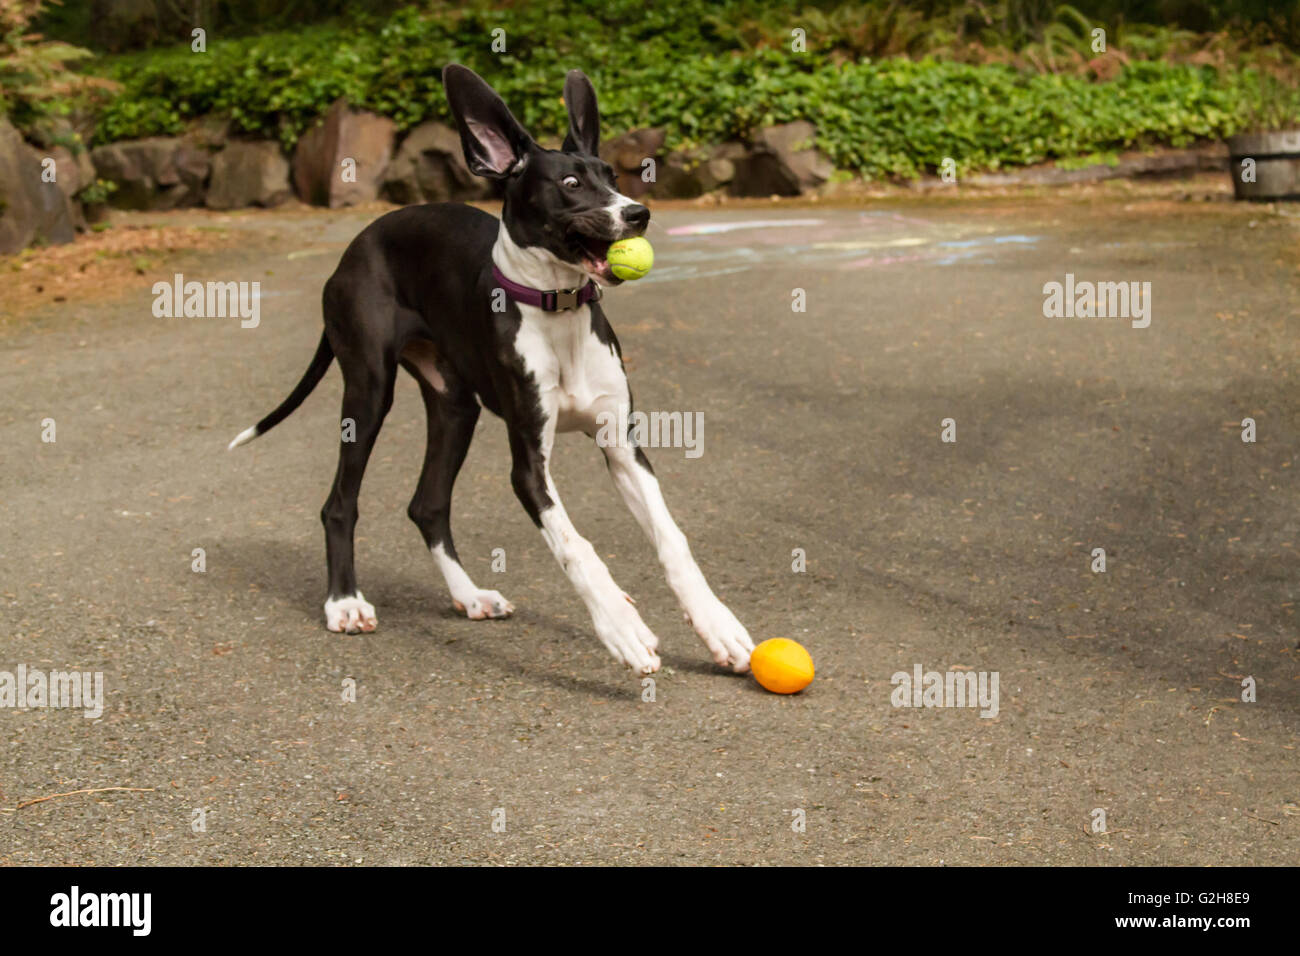 Sechs Monate alte Deutsche Dogge Welpen, Athena, schauen sehr erstaunt, als sie einen Tennisball fängt Stockfoto